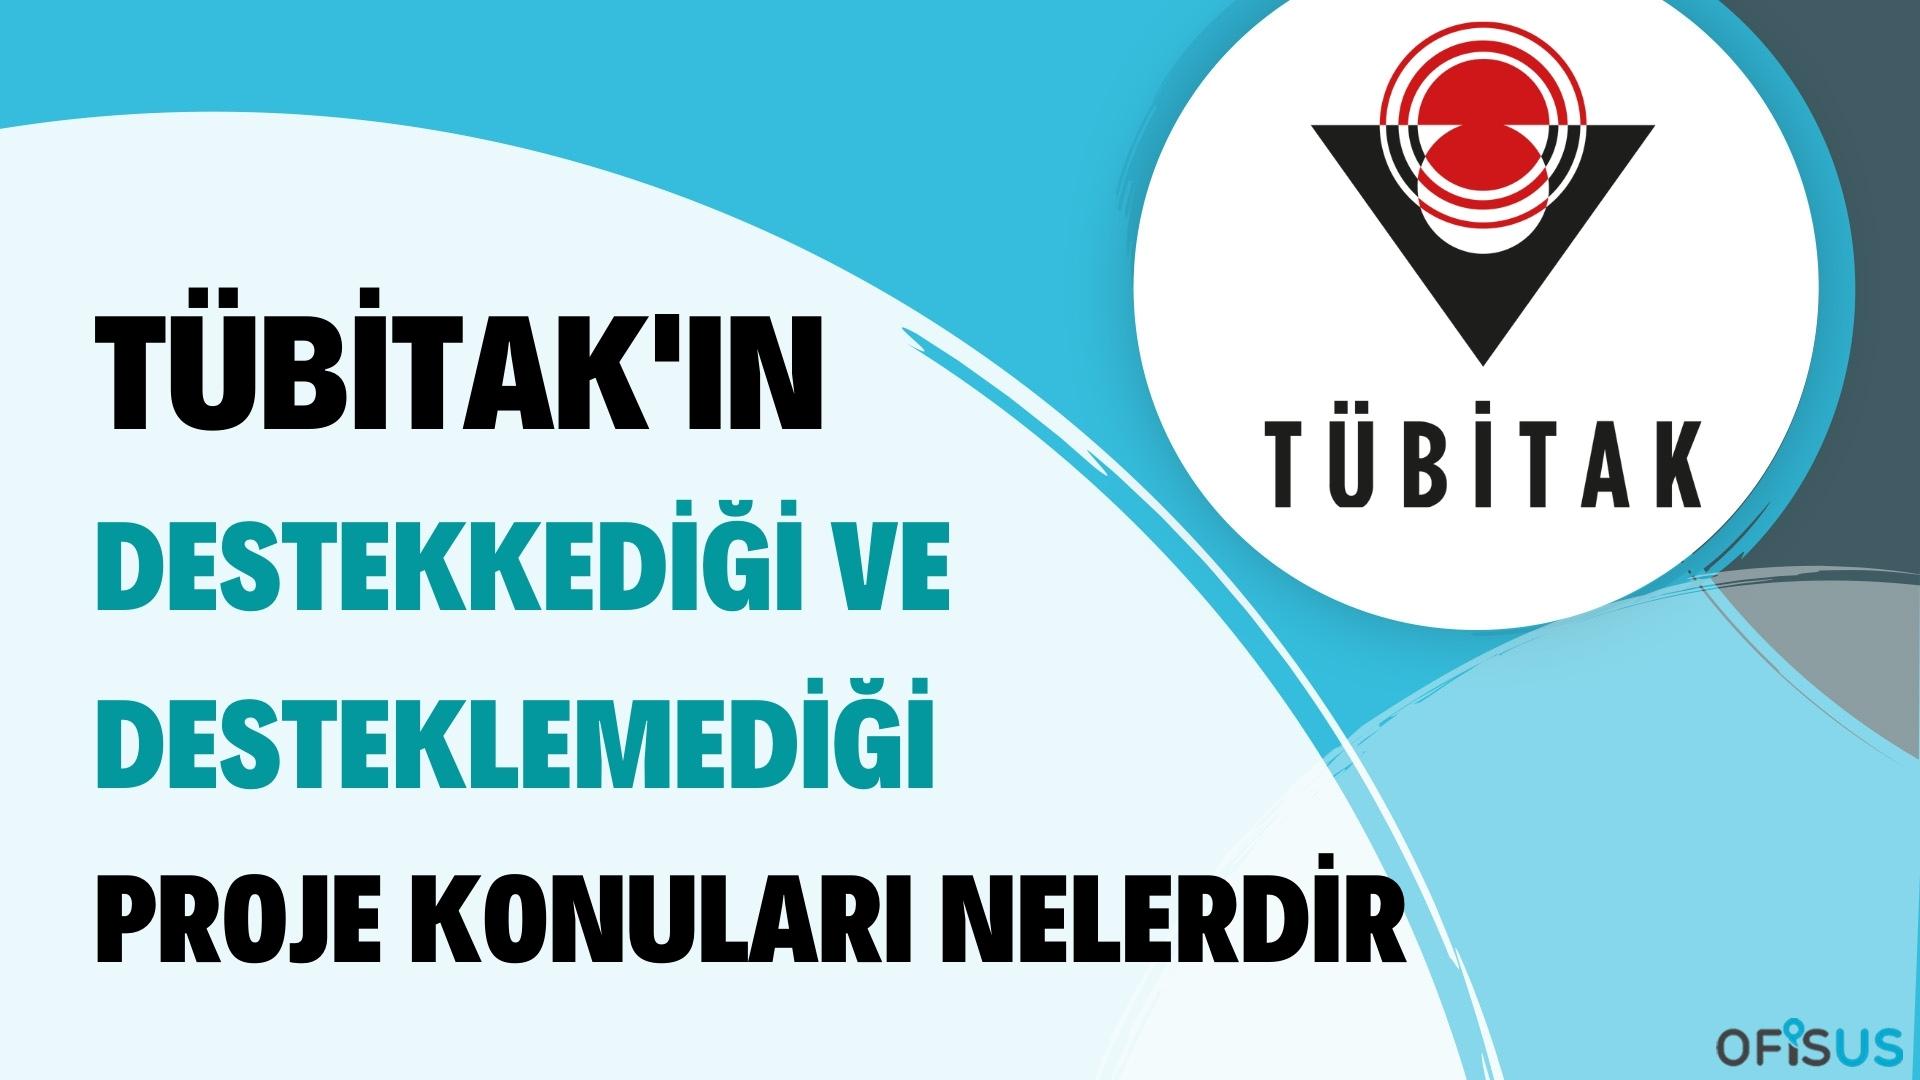 Tübitak 'ın destekledigi ve desteklemedigi projeler